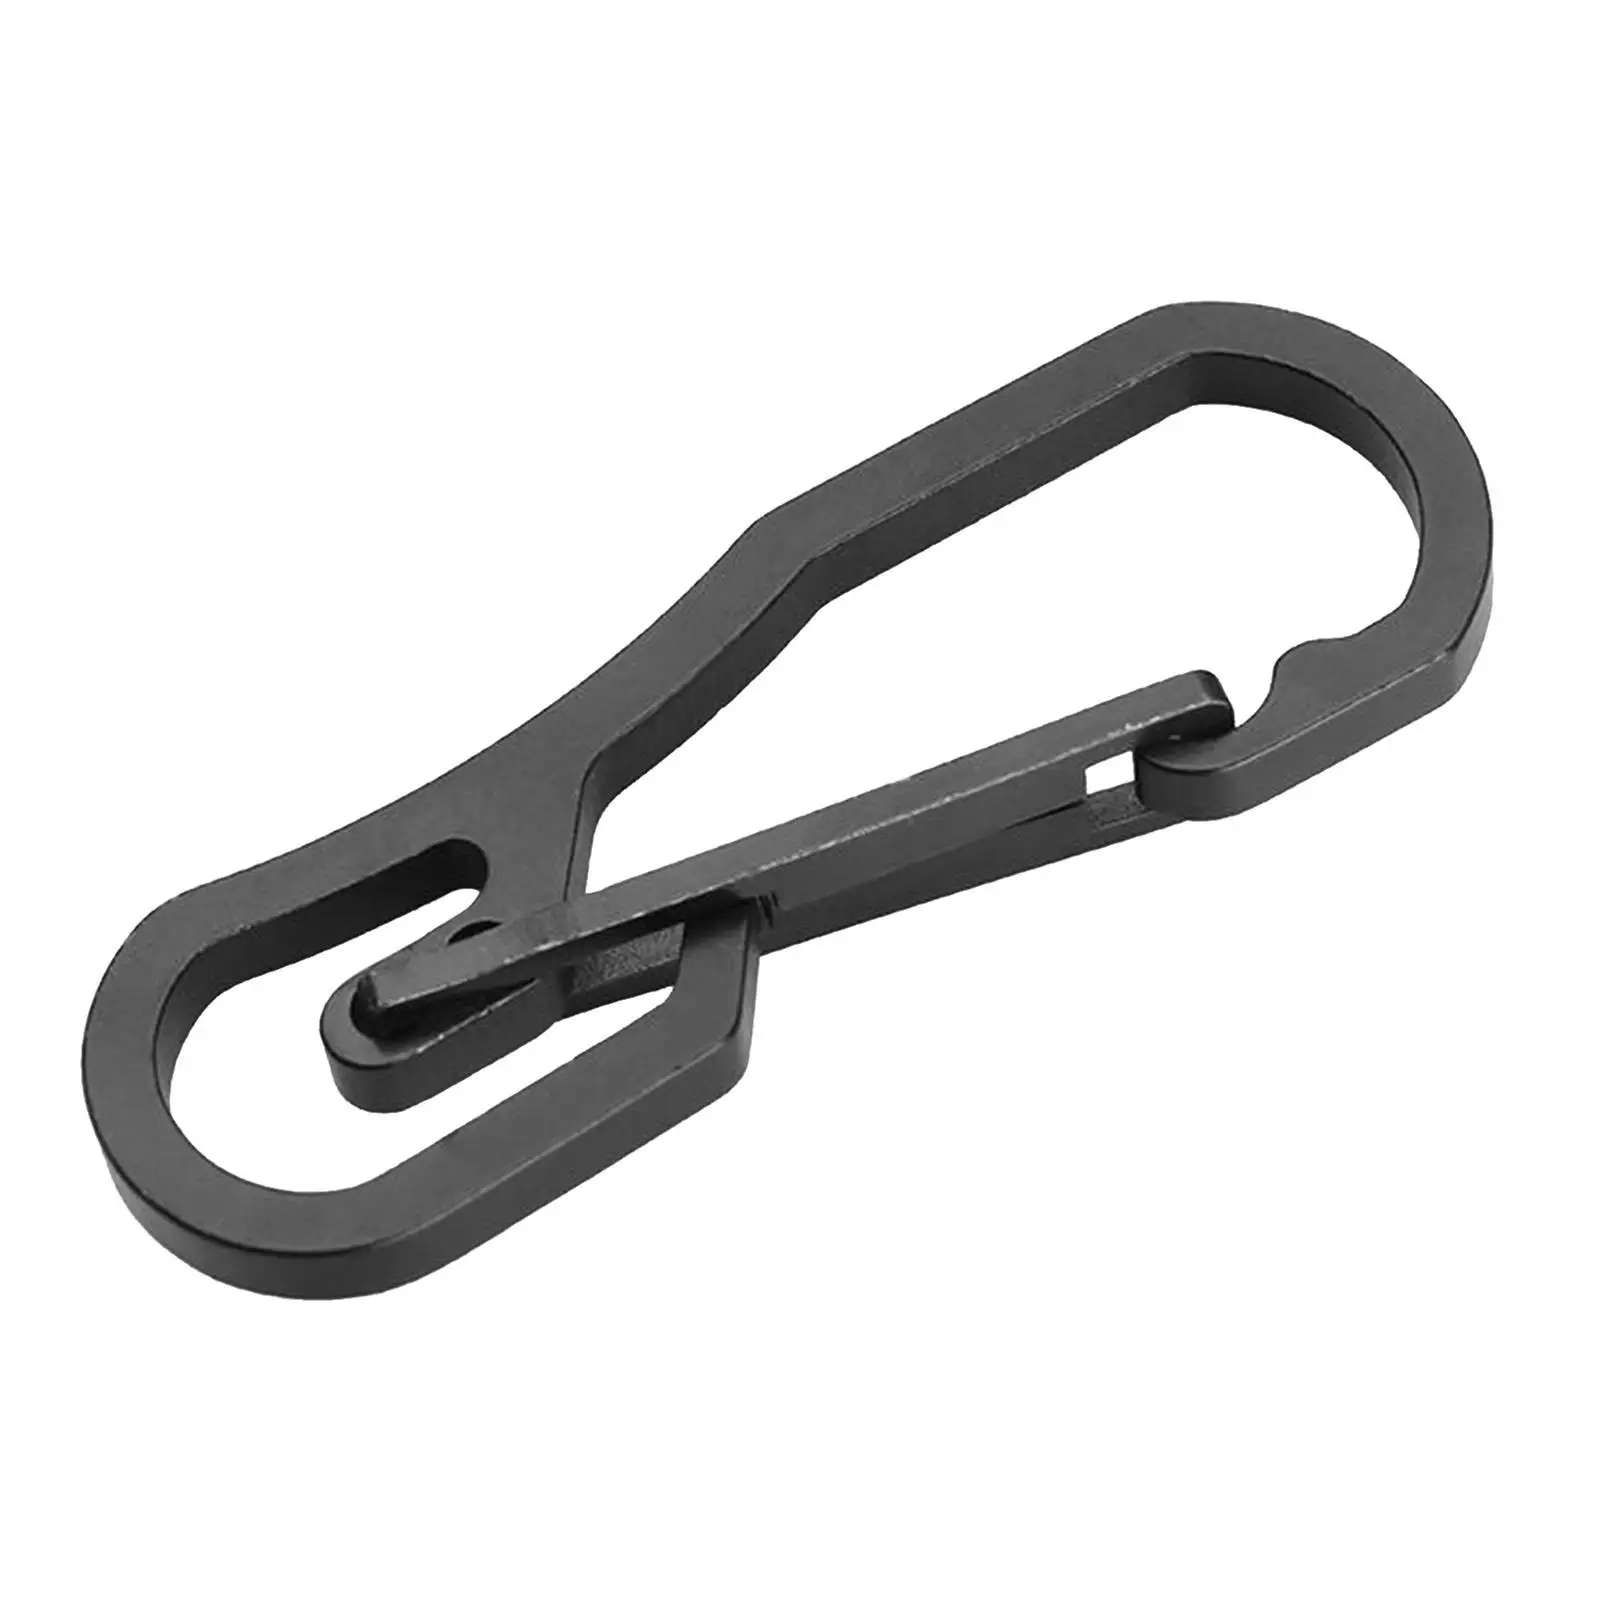 Stainless Steel Key Buckle Snap Spring Clip Hook Carabiner Outdoor Sport Tool